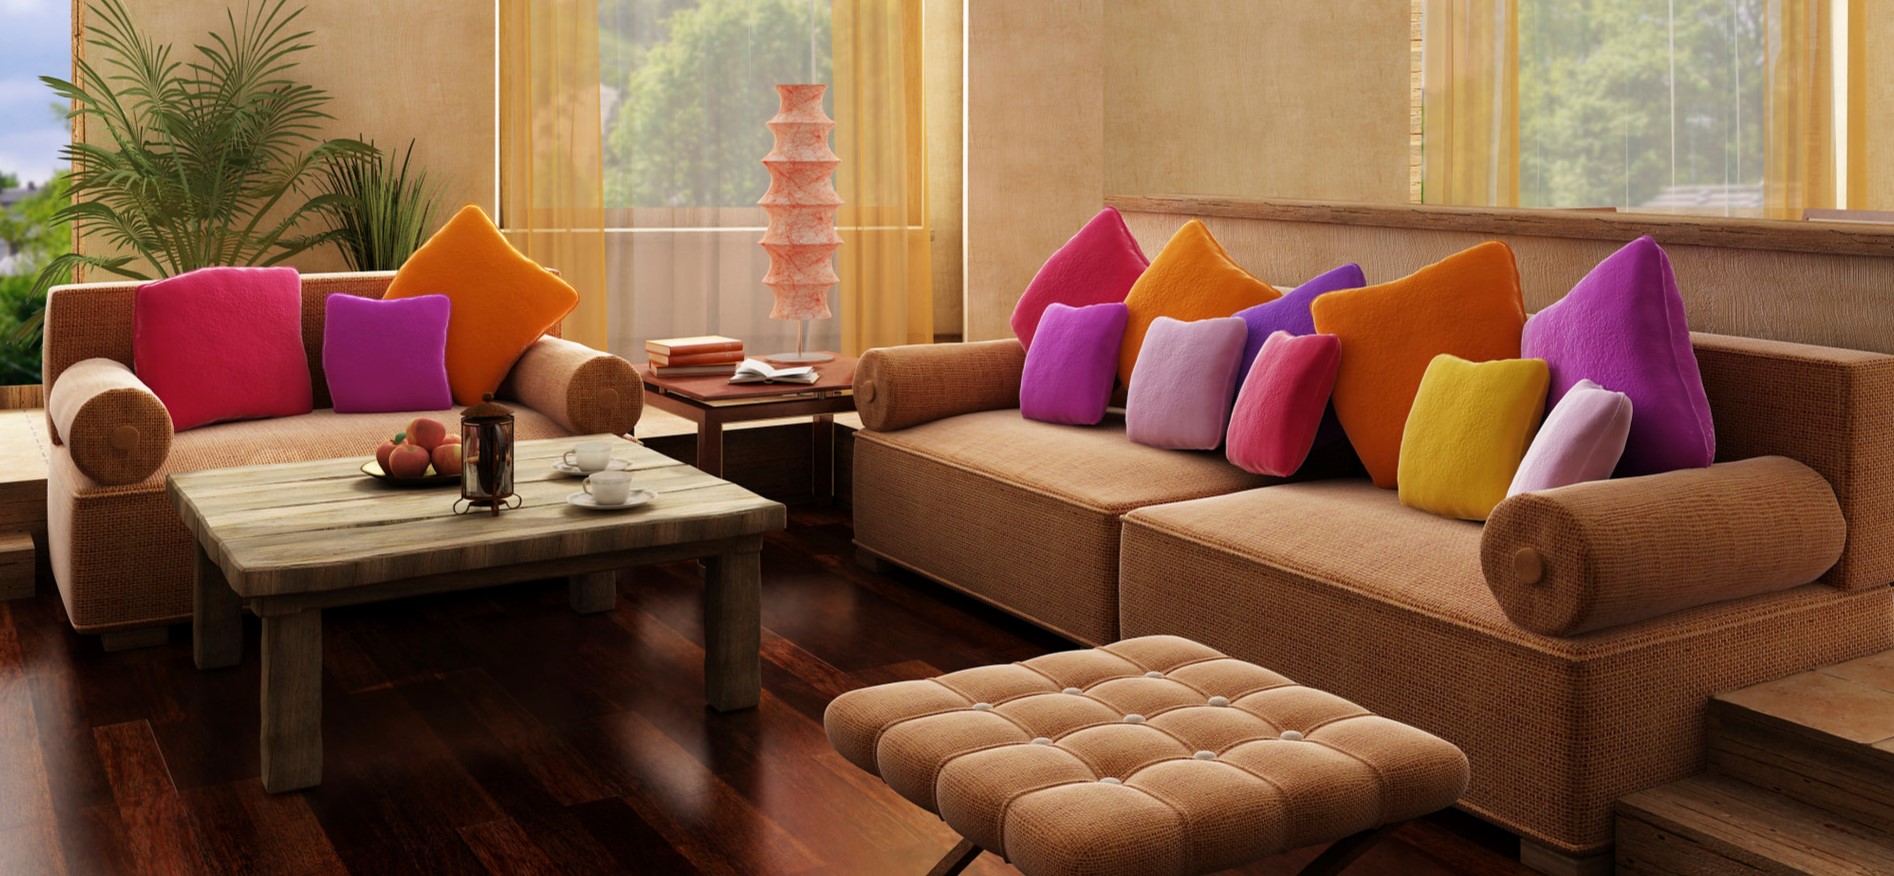 Диван с коричневой однотонной обивкой можно декорировать цветными подушками